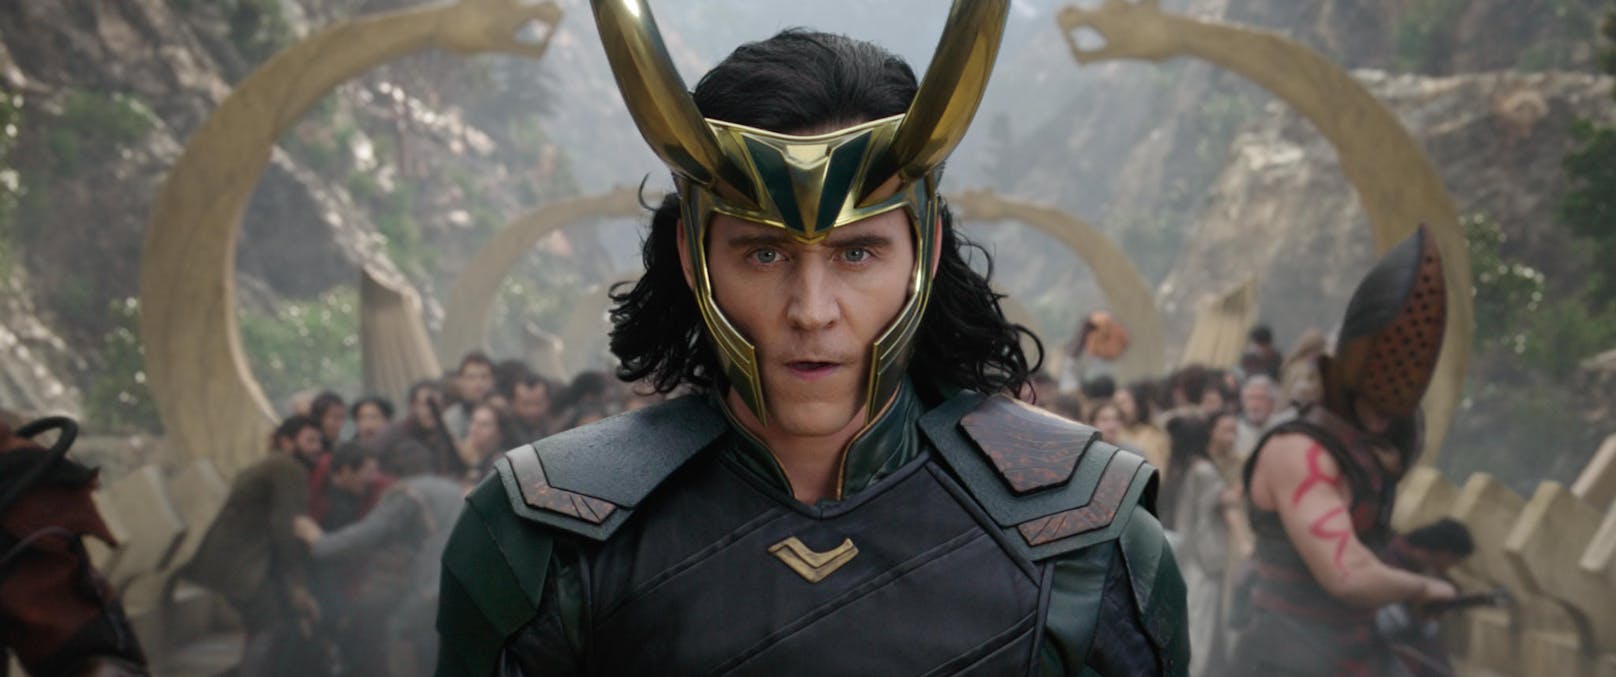 Tom Hiddleston als Loki in "Thor: Ragnarok"